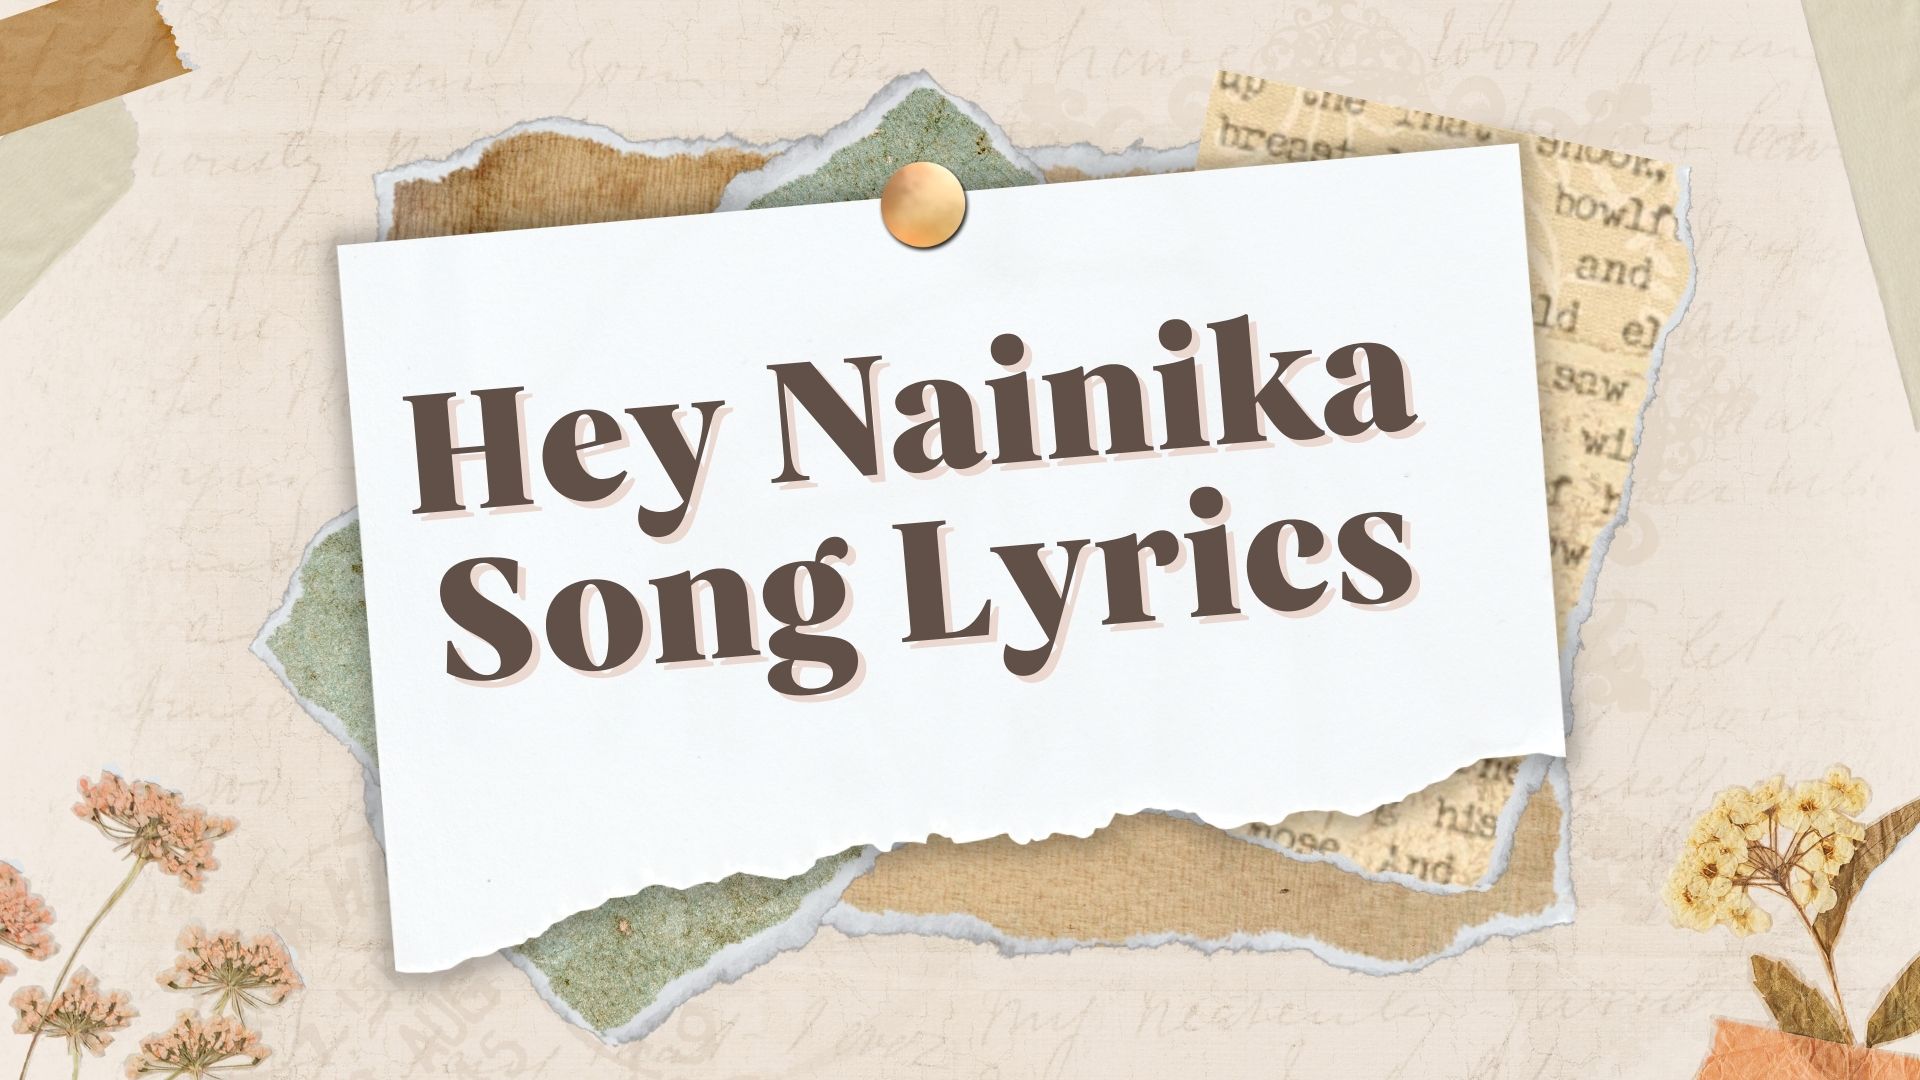 Hey Nainika Song Lyrics